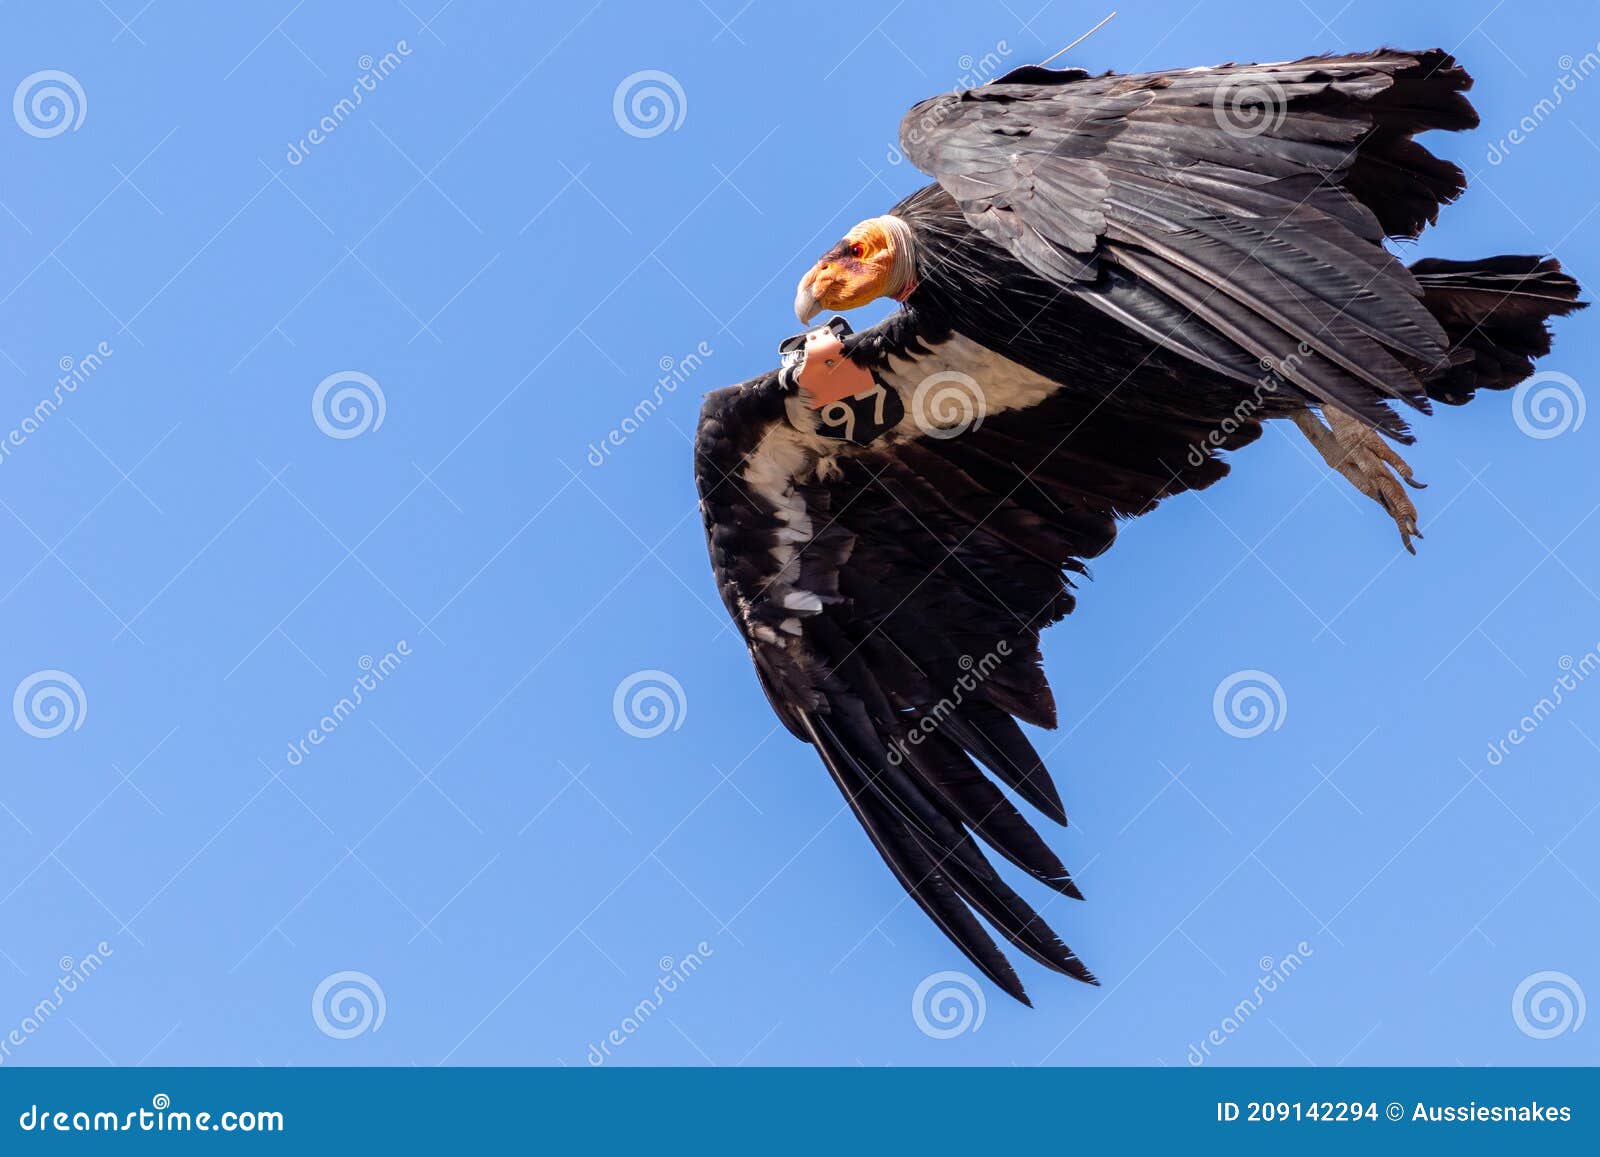 california condor (gymnogyps californianus)